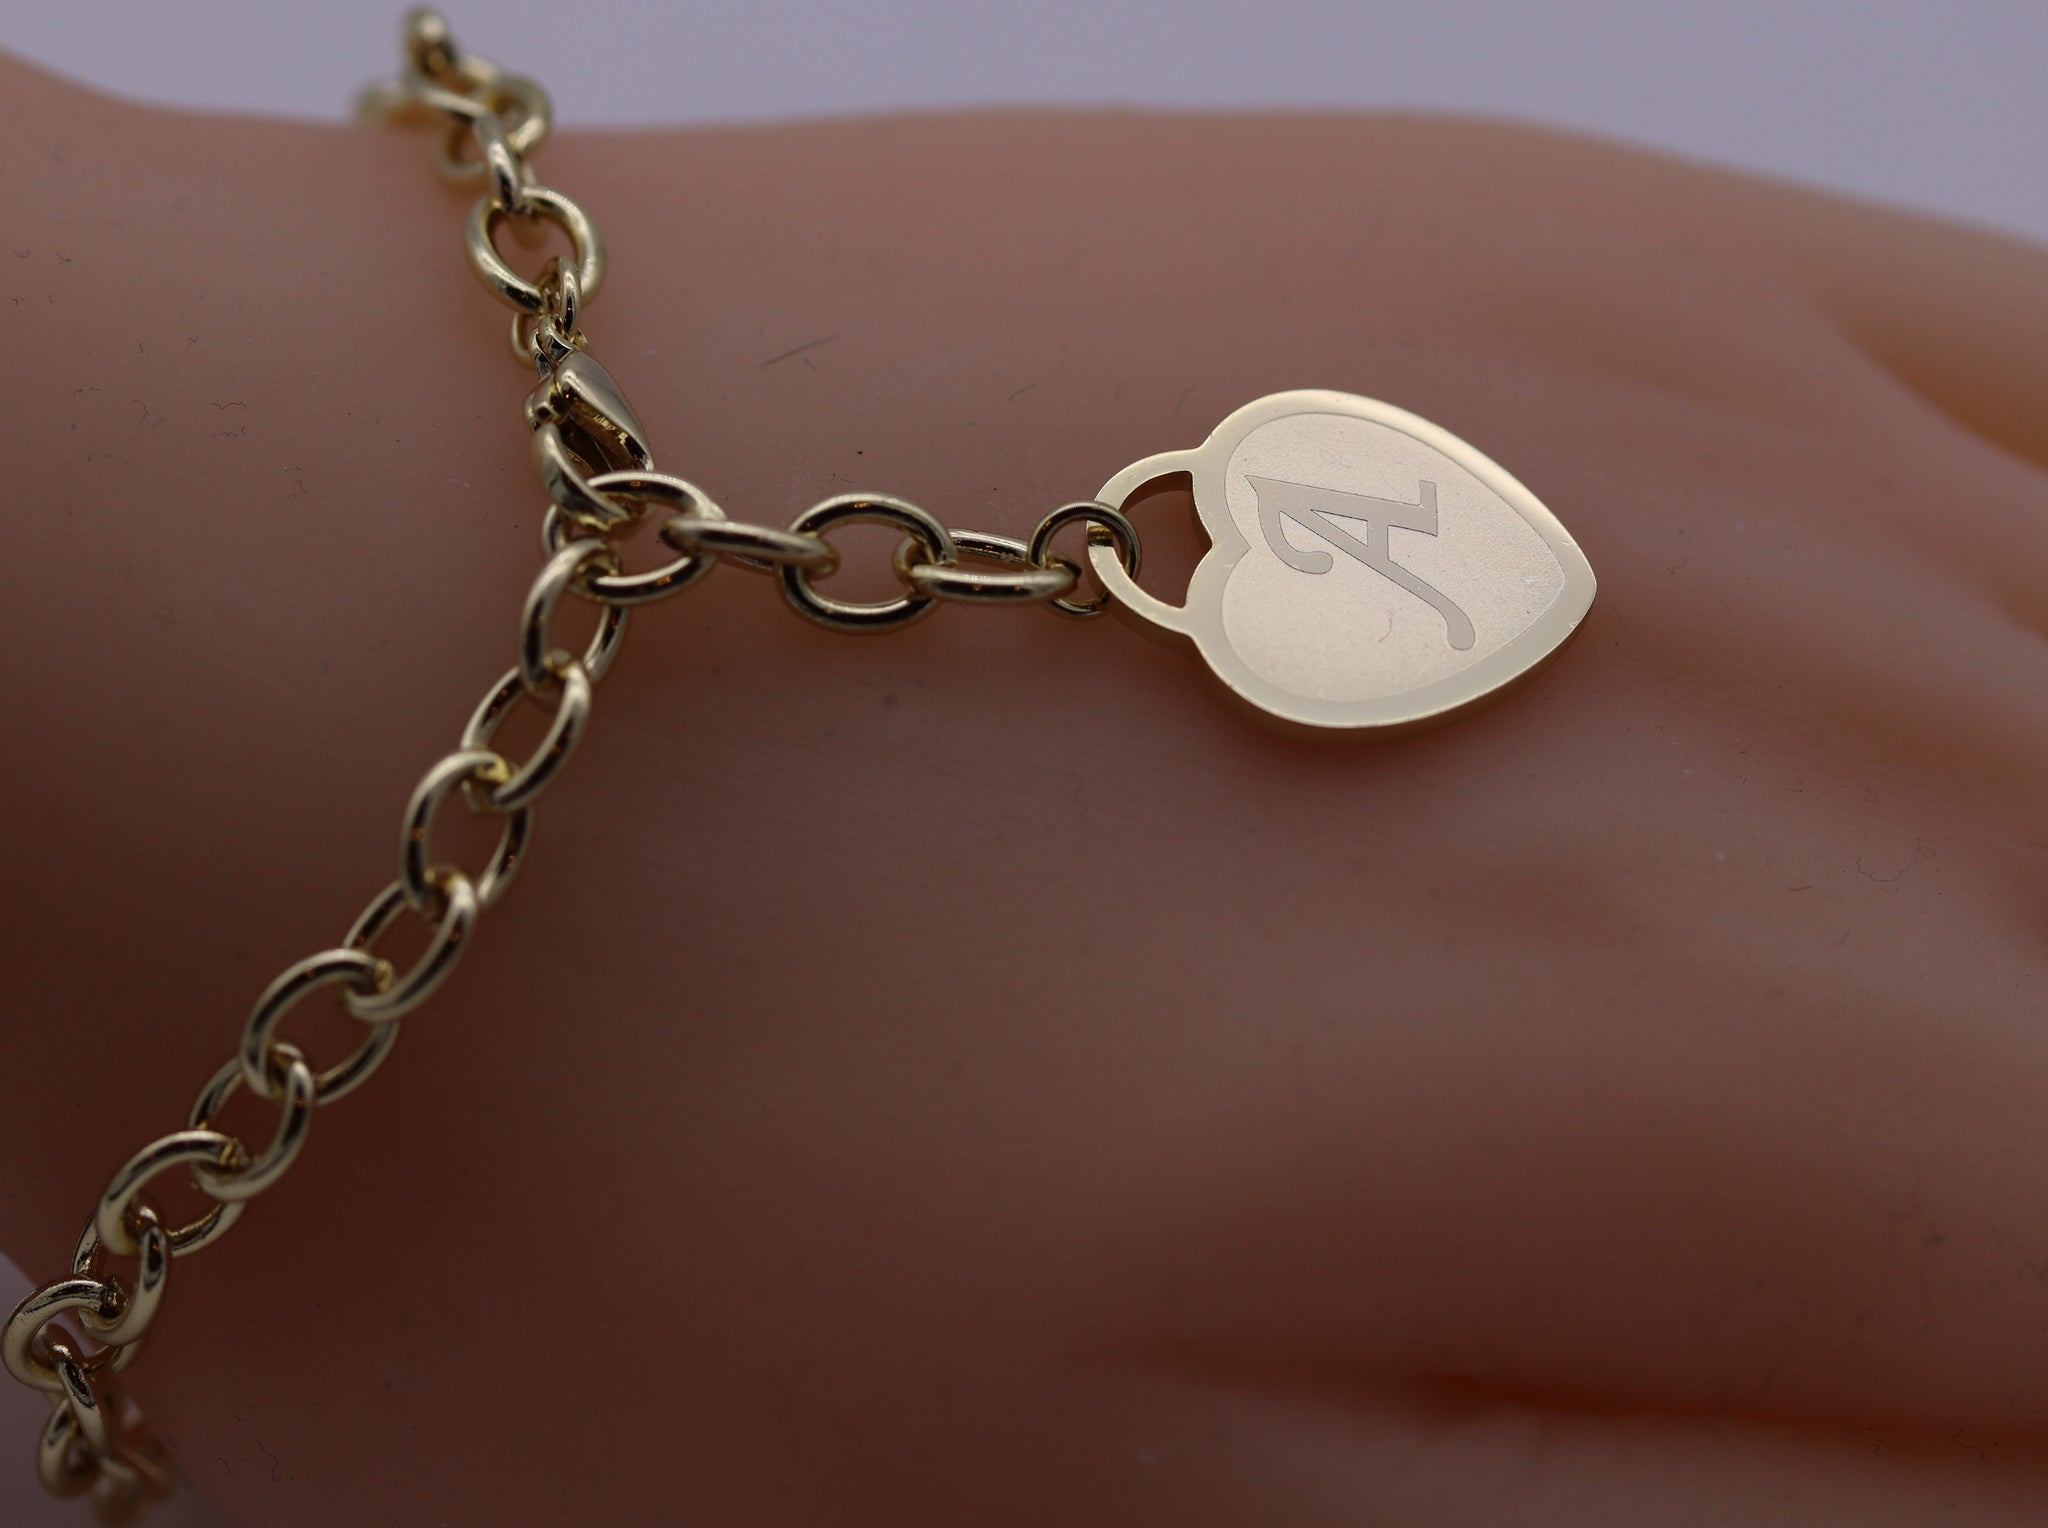 "Heart of Gold" Bracelet